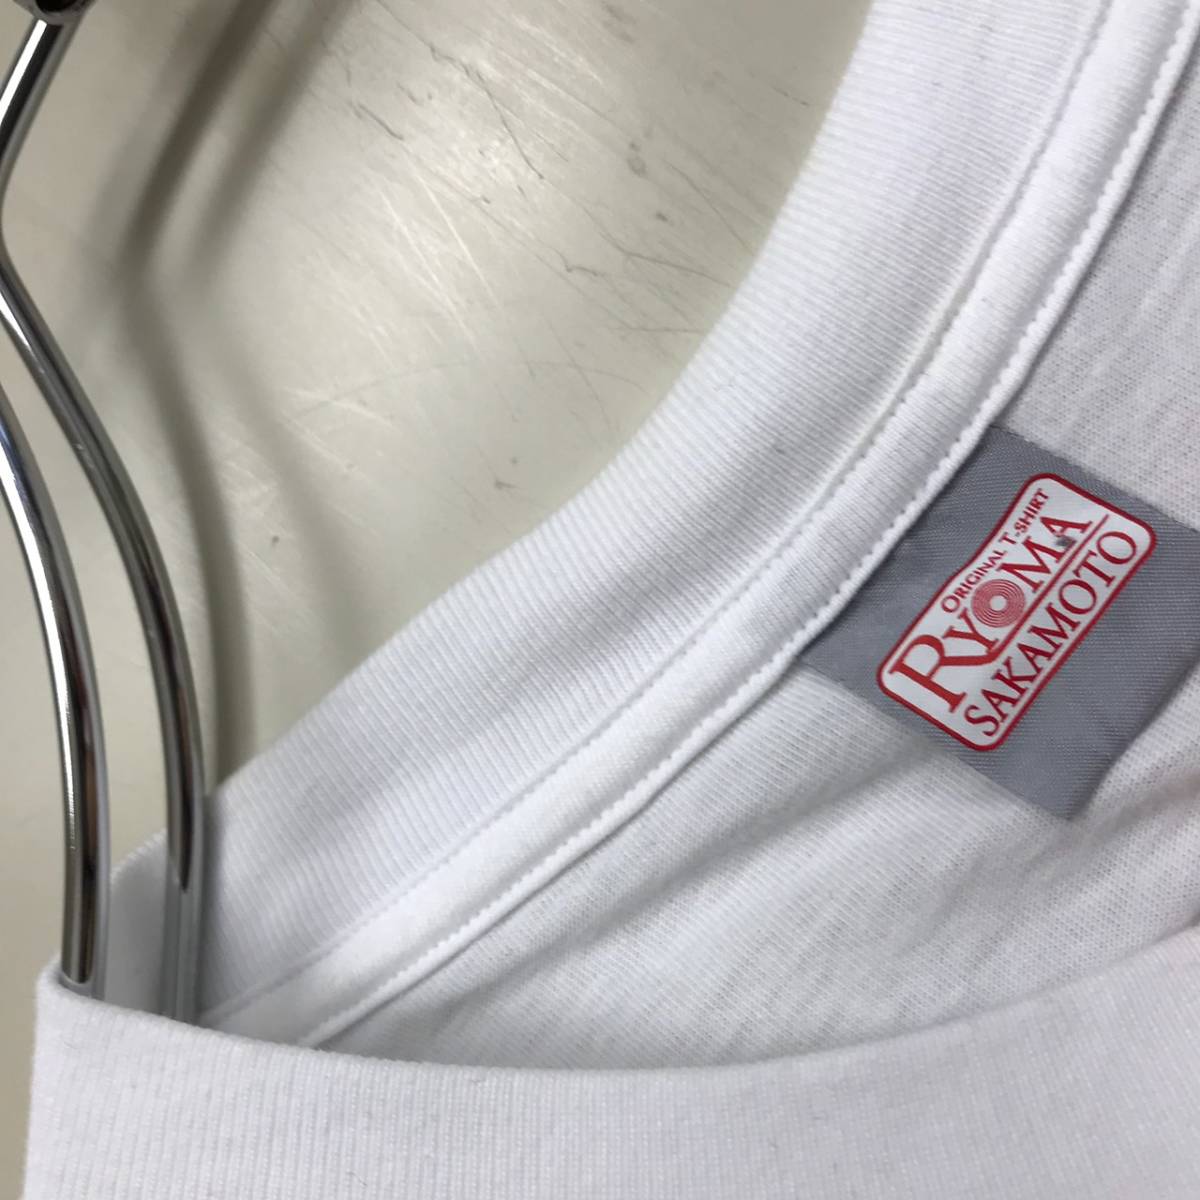 坂本龍馬 半袖Tシャツ バックプリント ホワイト Mサイズ